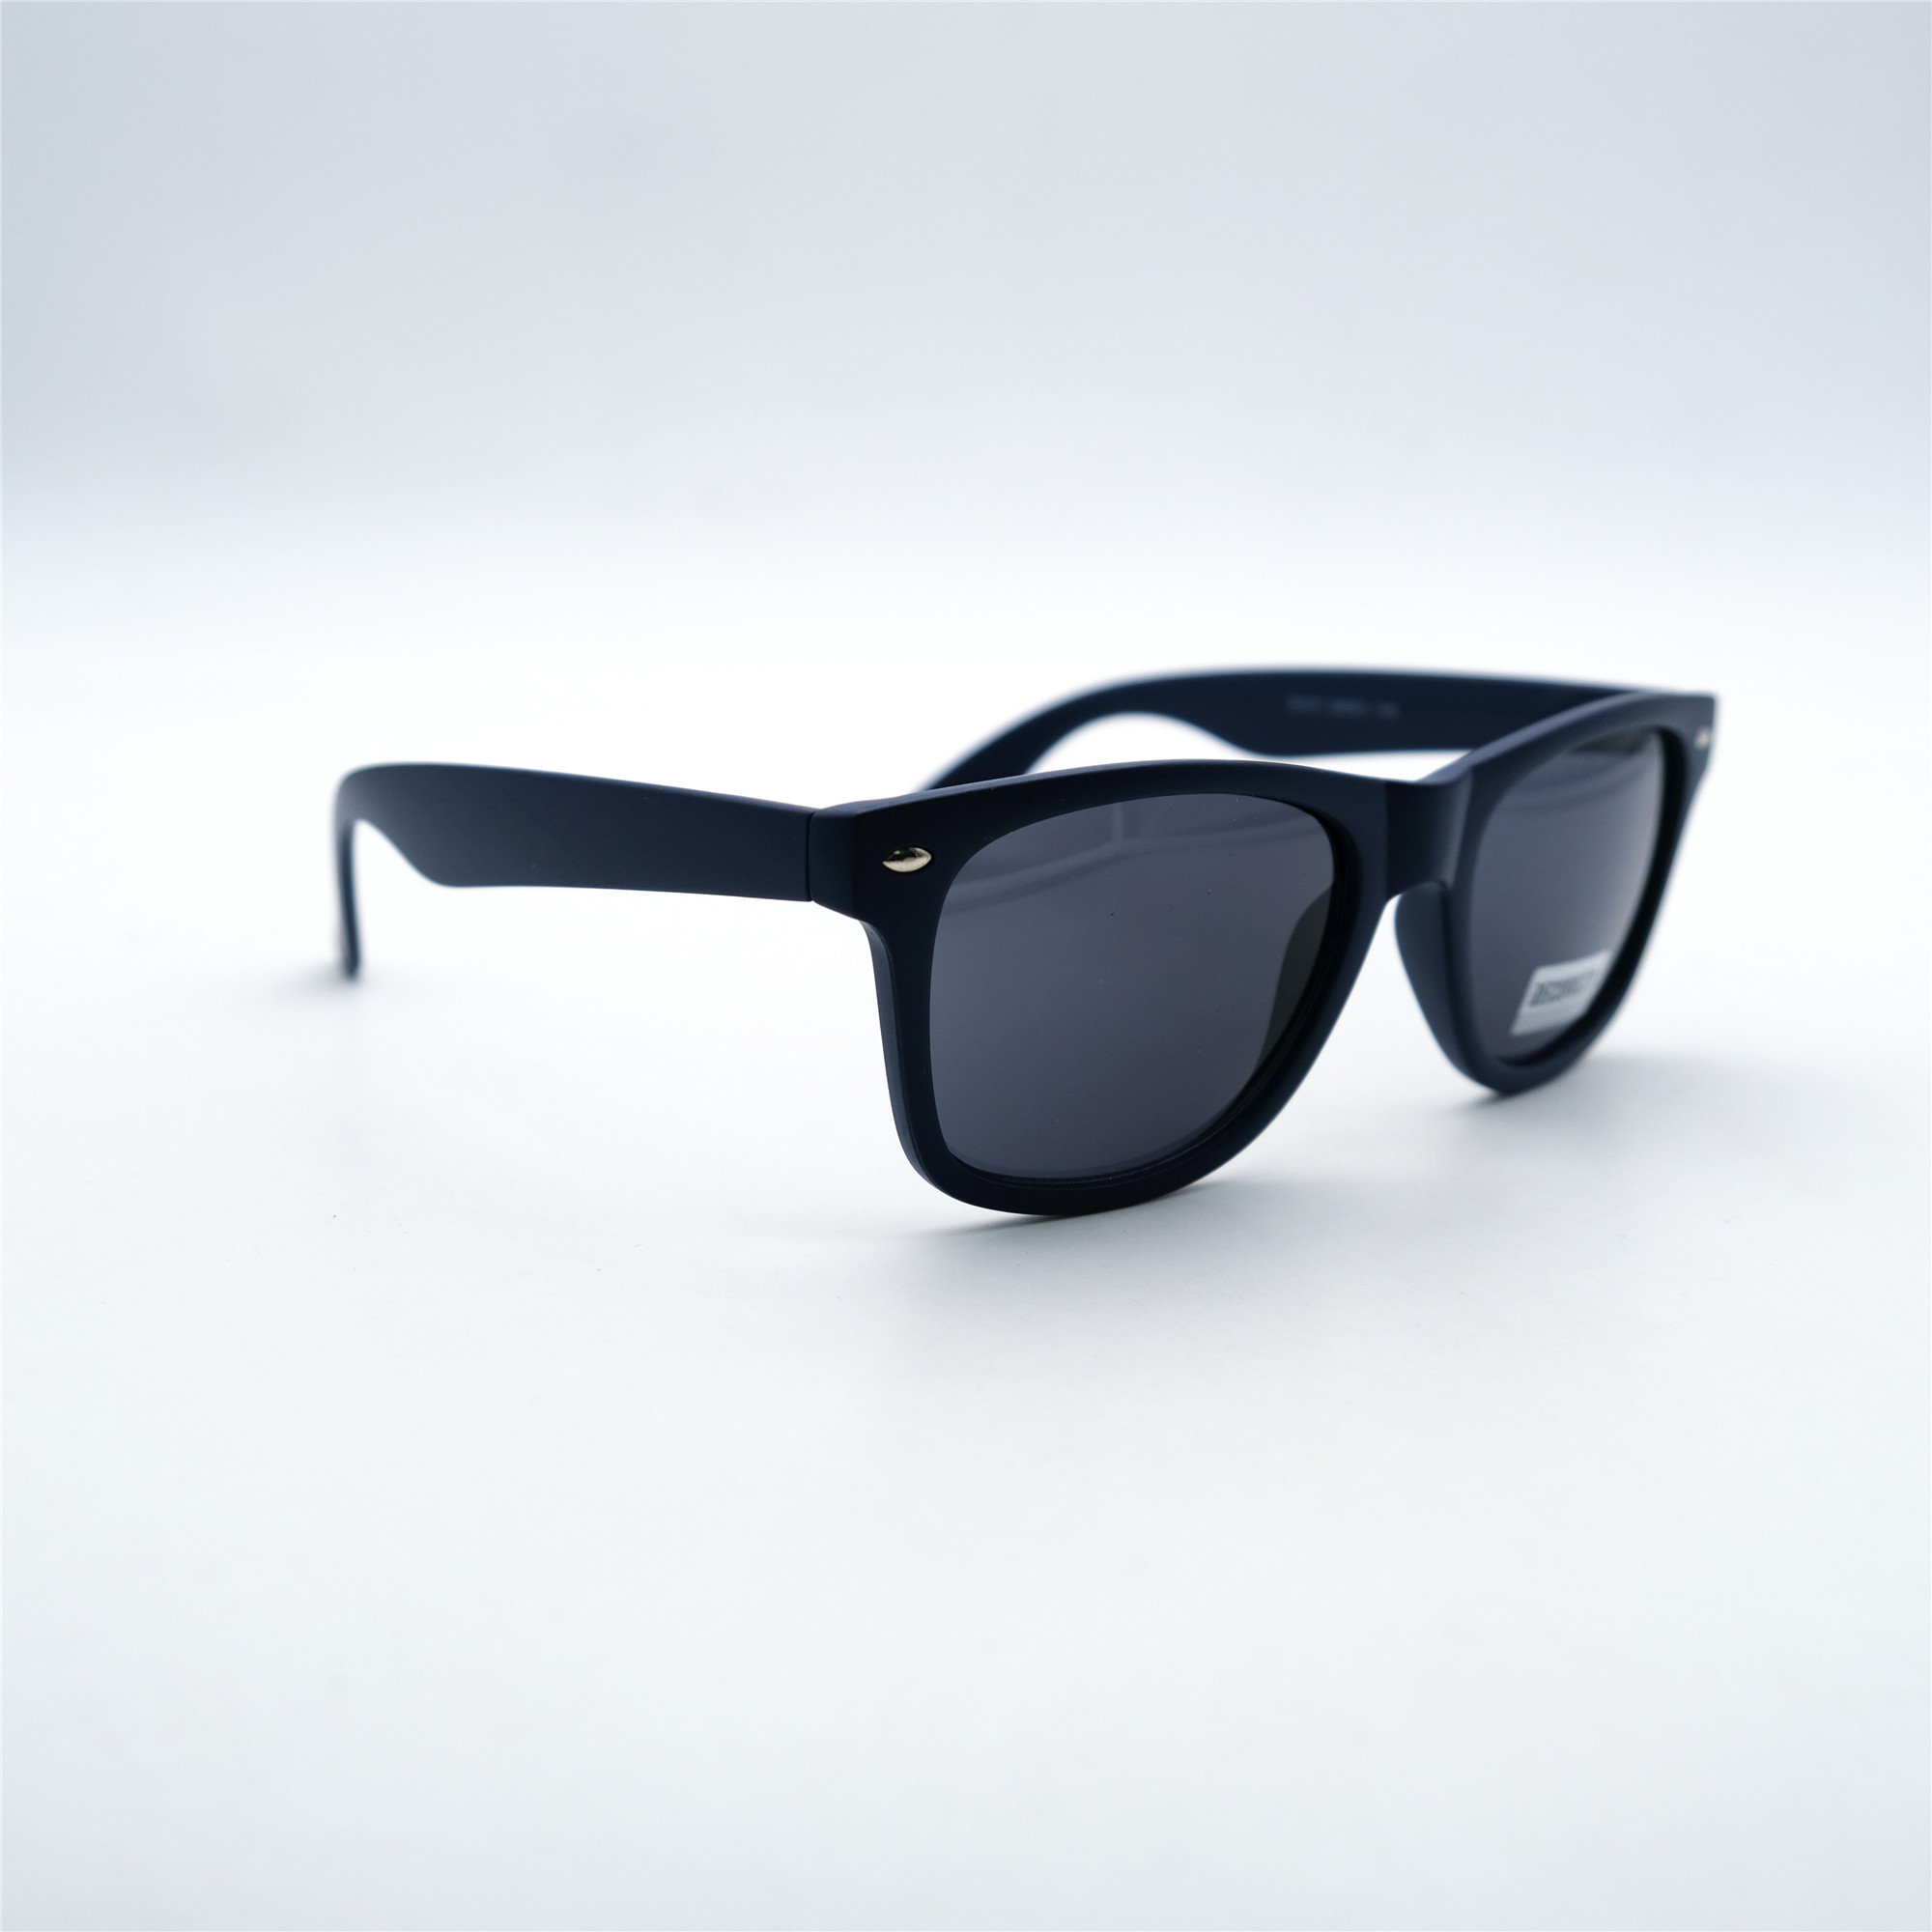  Солнцезащитные очки картинка Мужские Decorozza  Квадратные D1011-9 